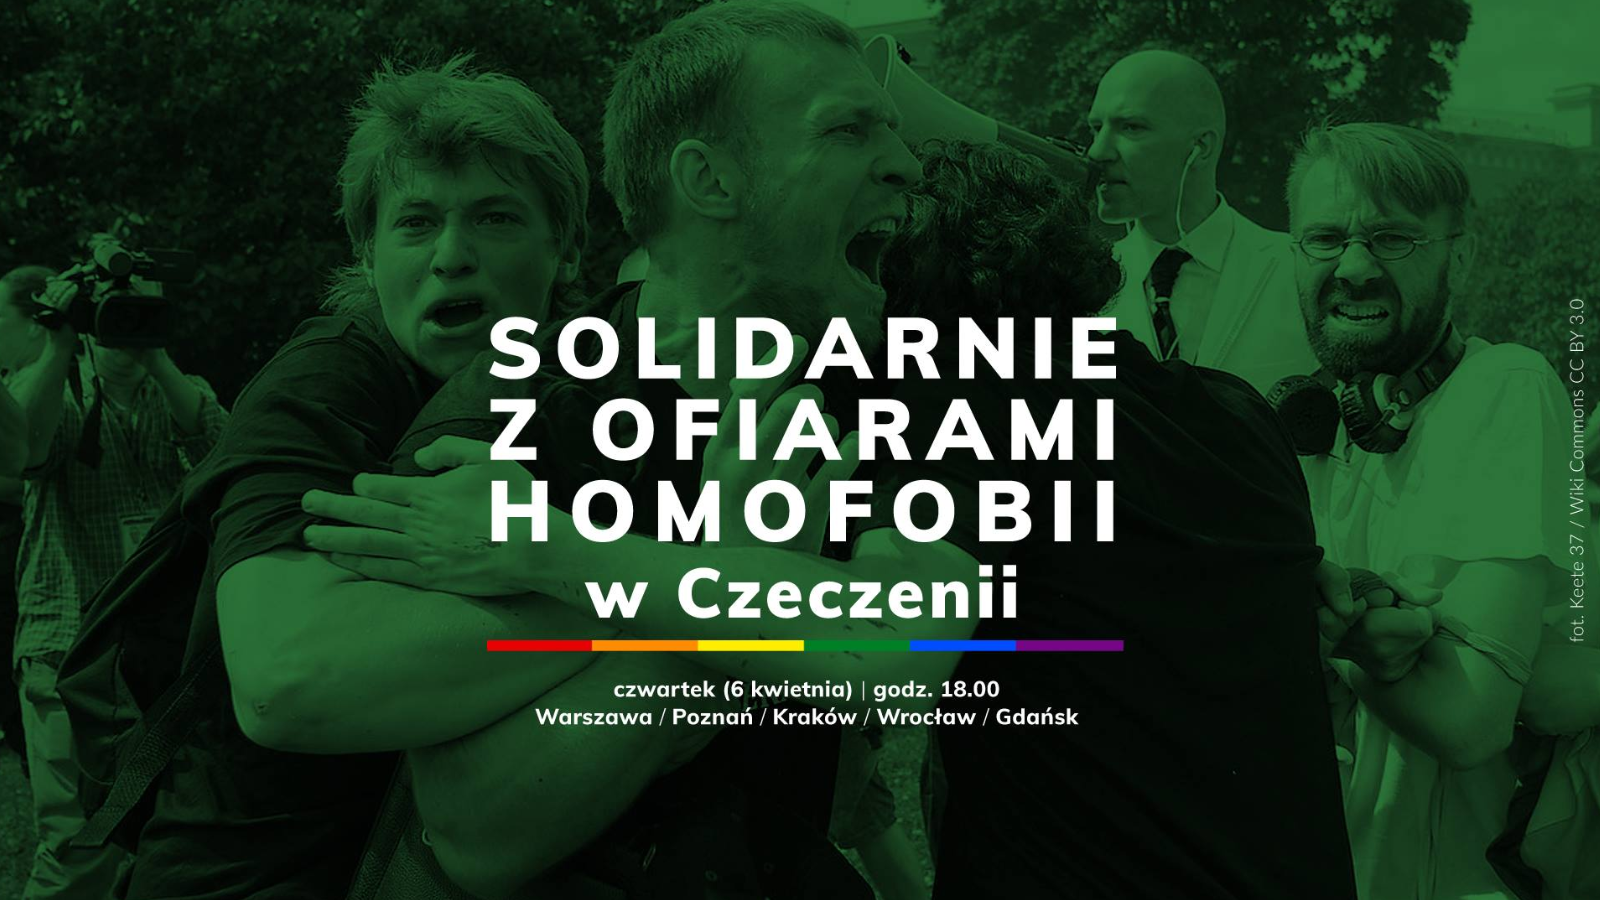 Solidarnie z ofiarami homofobii w Czeczenii